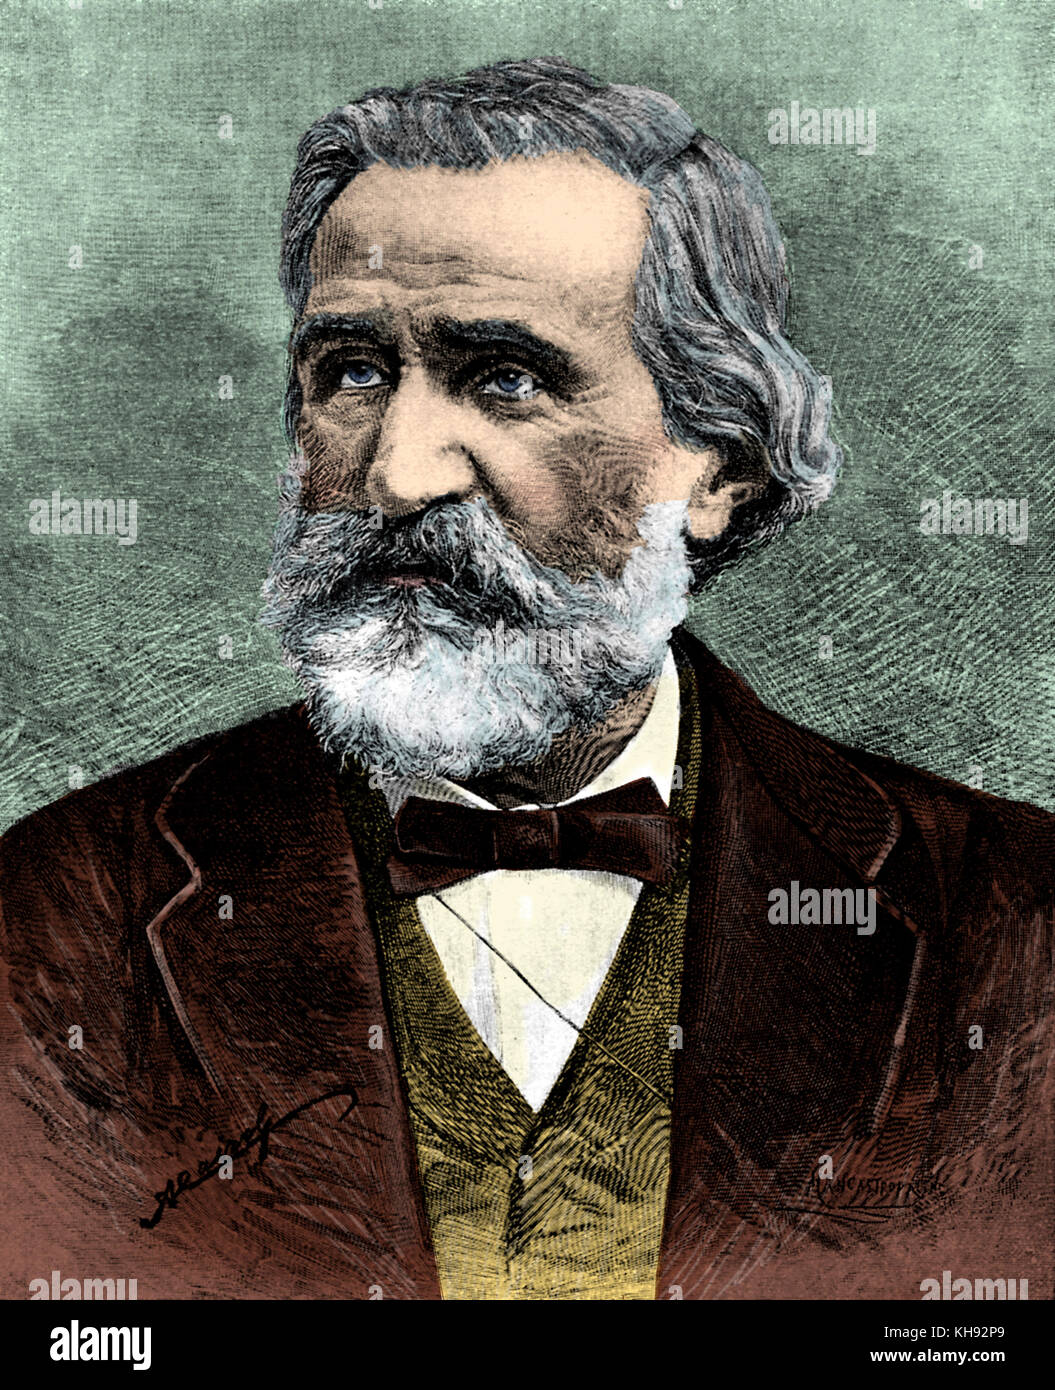 Ritratto di Giuseppe Verdi - compositore italiano, 9 o 10 Ottobre 1813 - 27 gennaio 1901. Disegno da un Cairoli dopo una incisione di Mancastropa. Foto Stock